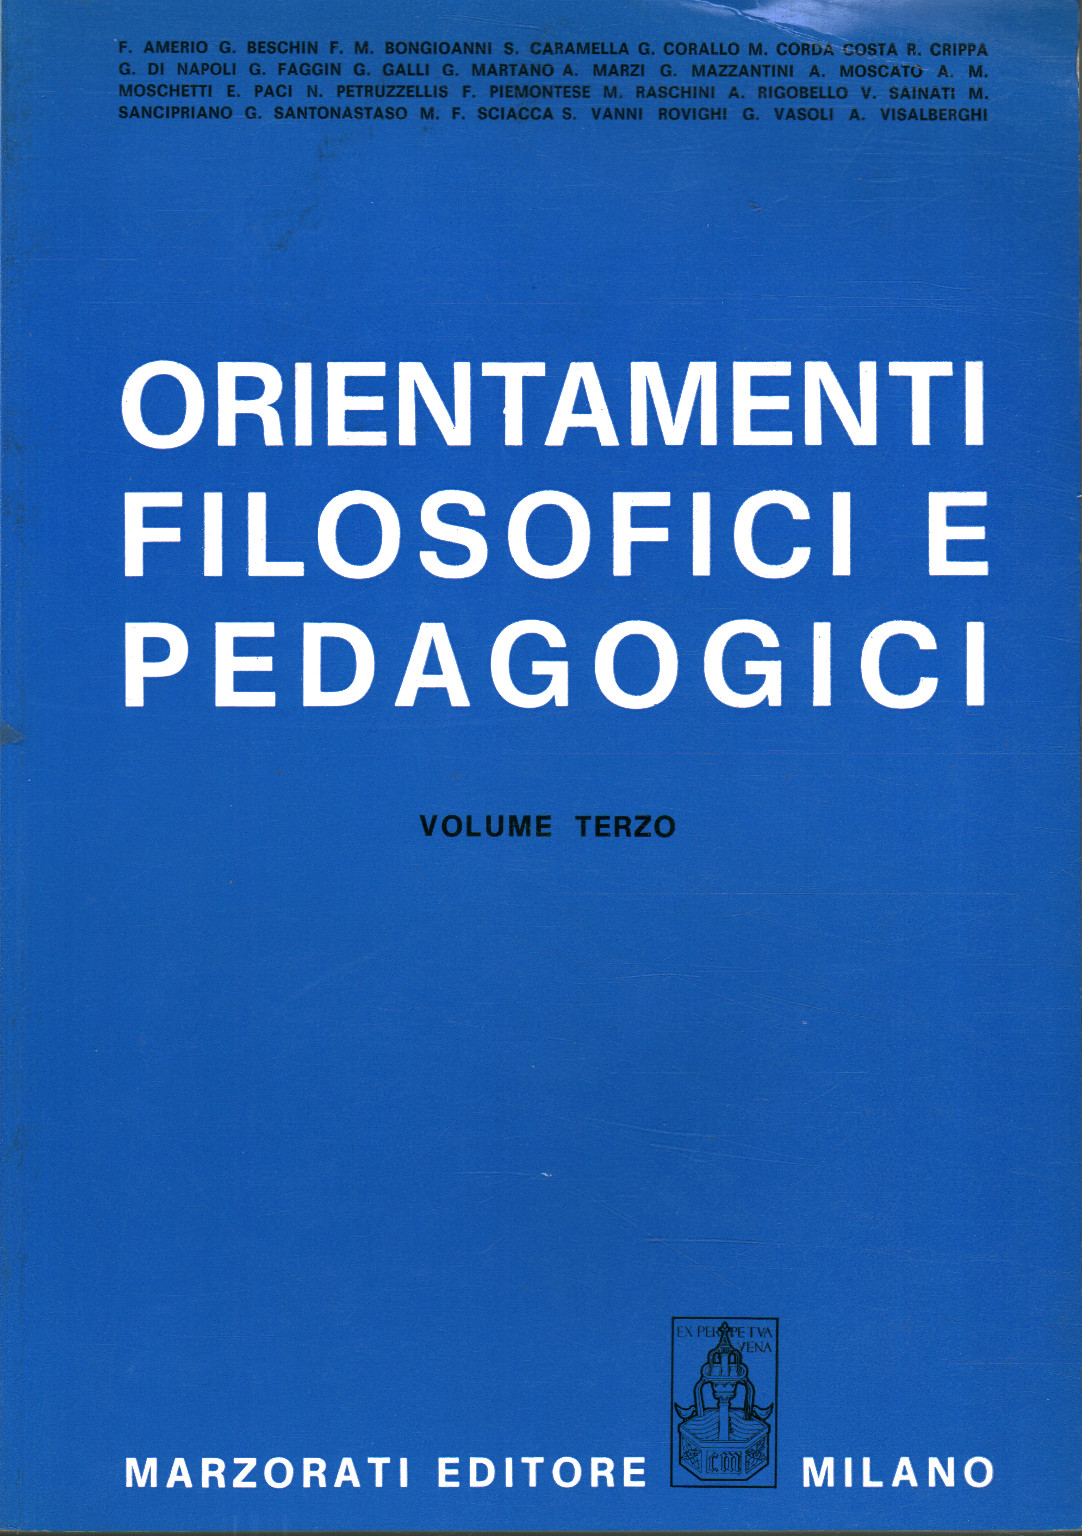 Orientations philosophiques et pédagogiques (troisième volume)